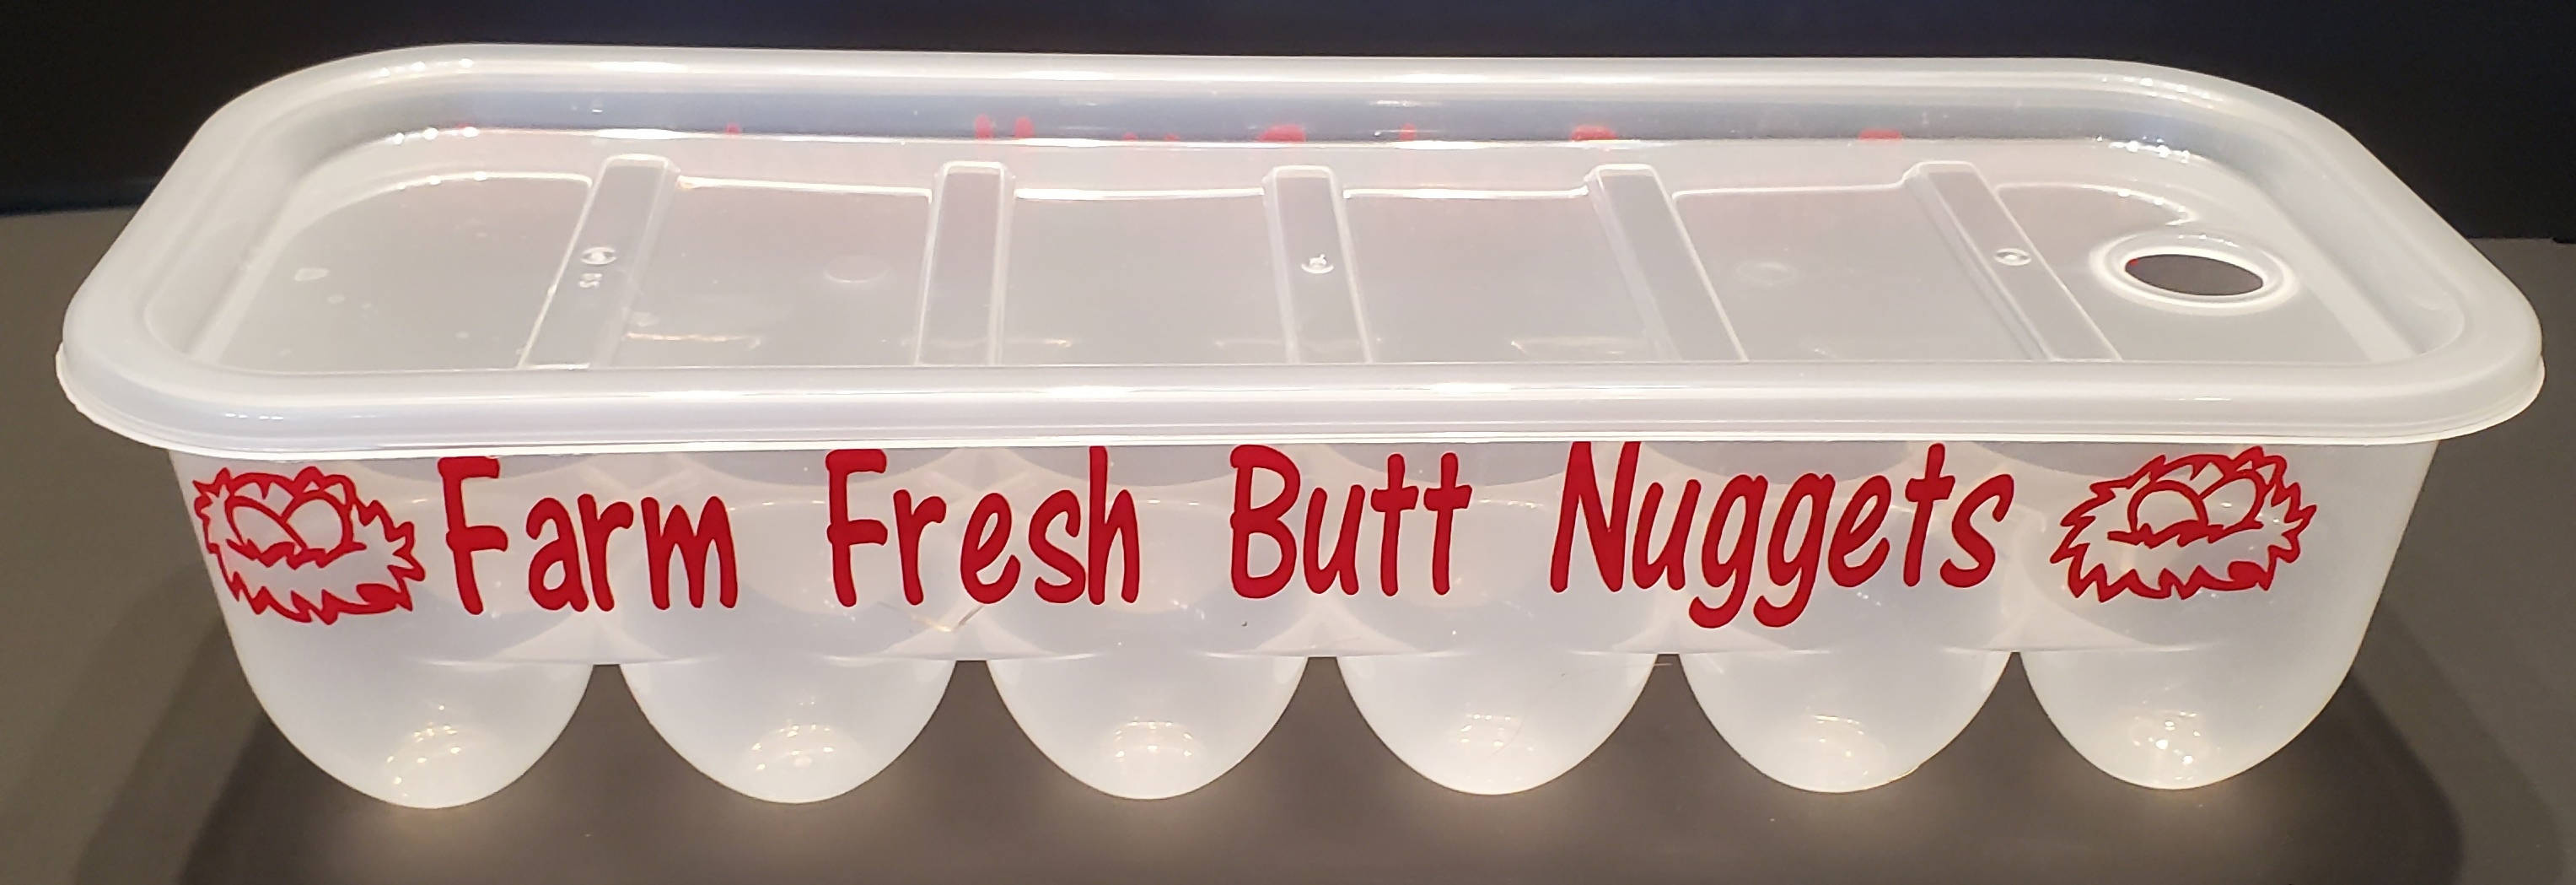 Farm Fresh Butt Nuggets... Egg Carton